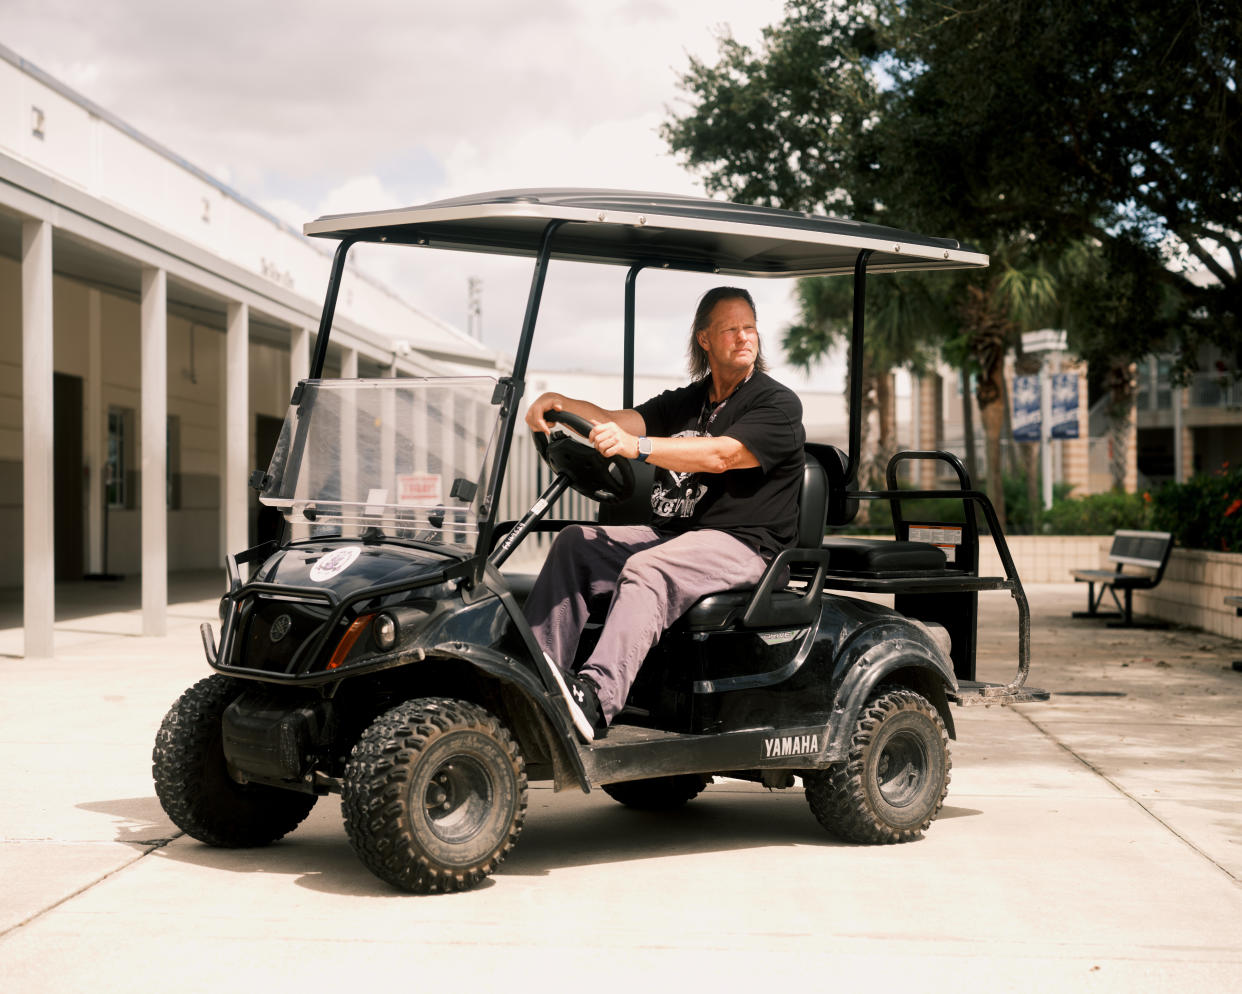 Lyle Lake, agente de seguridad de la escuela secundaria Timber Creek en Orlando, Florida, patrulla en un carrito de golf durante la hora del almuerzo, en busca de alumnos que infrinjan la prohibición de utilizar celulares impuesta por el distrito escolar. (Zack Wittman/The New York Times)